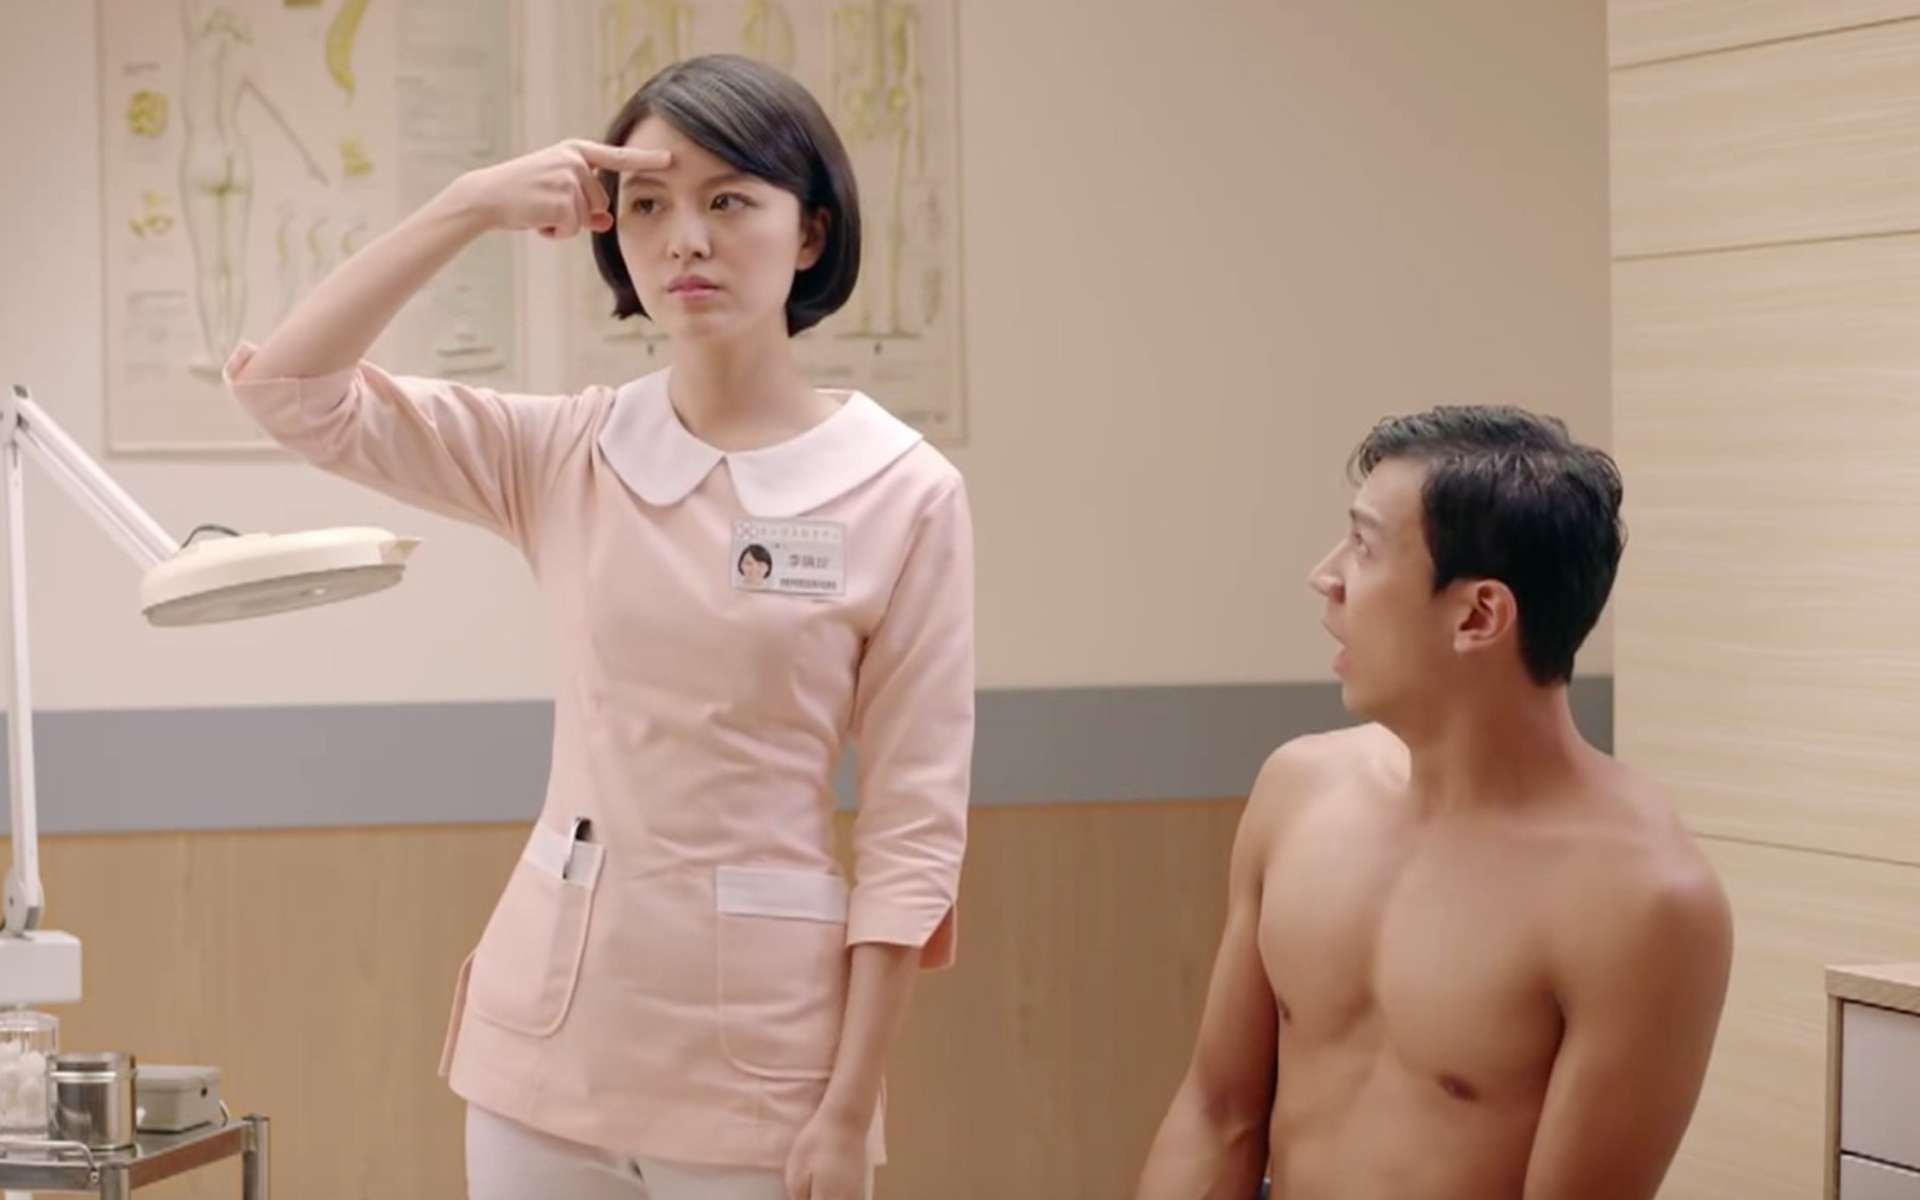 台湾奇葩脑洞广告《匪夷所思的体检》